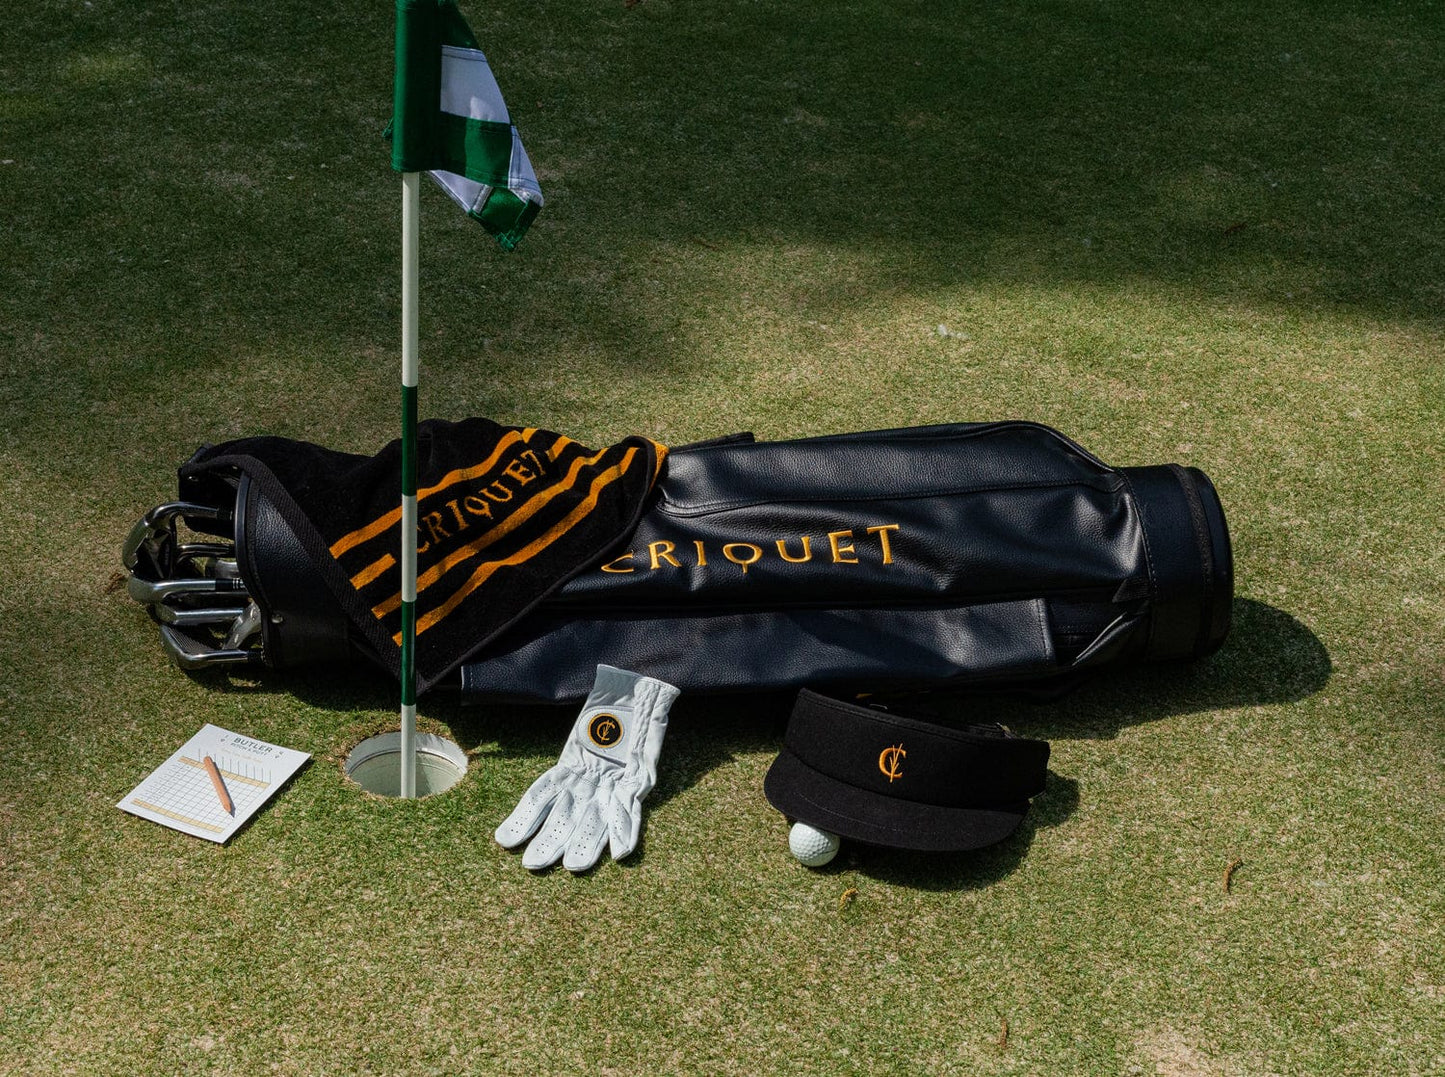 Terry Jacquard Golf Towel - Criquet Stripe - Black/Gold